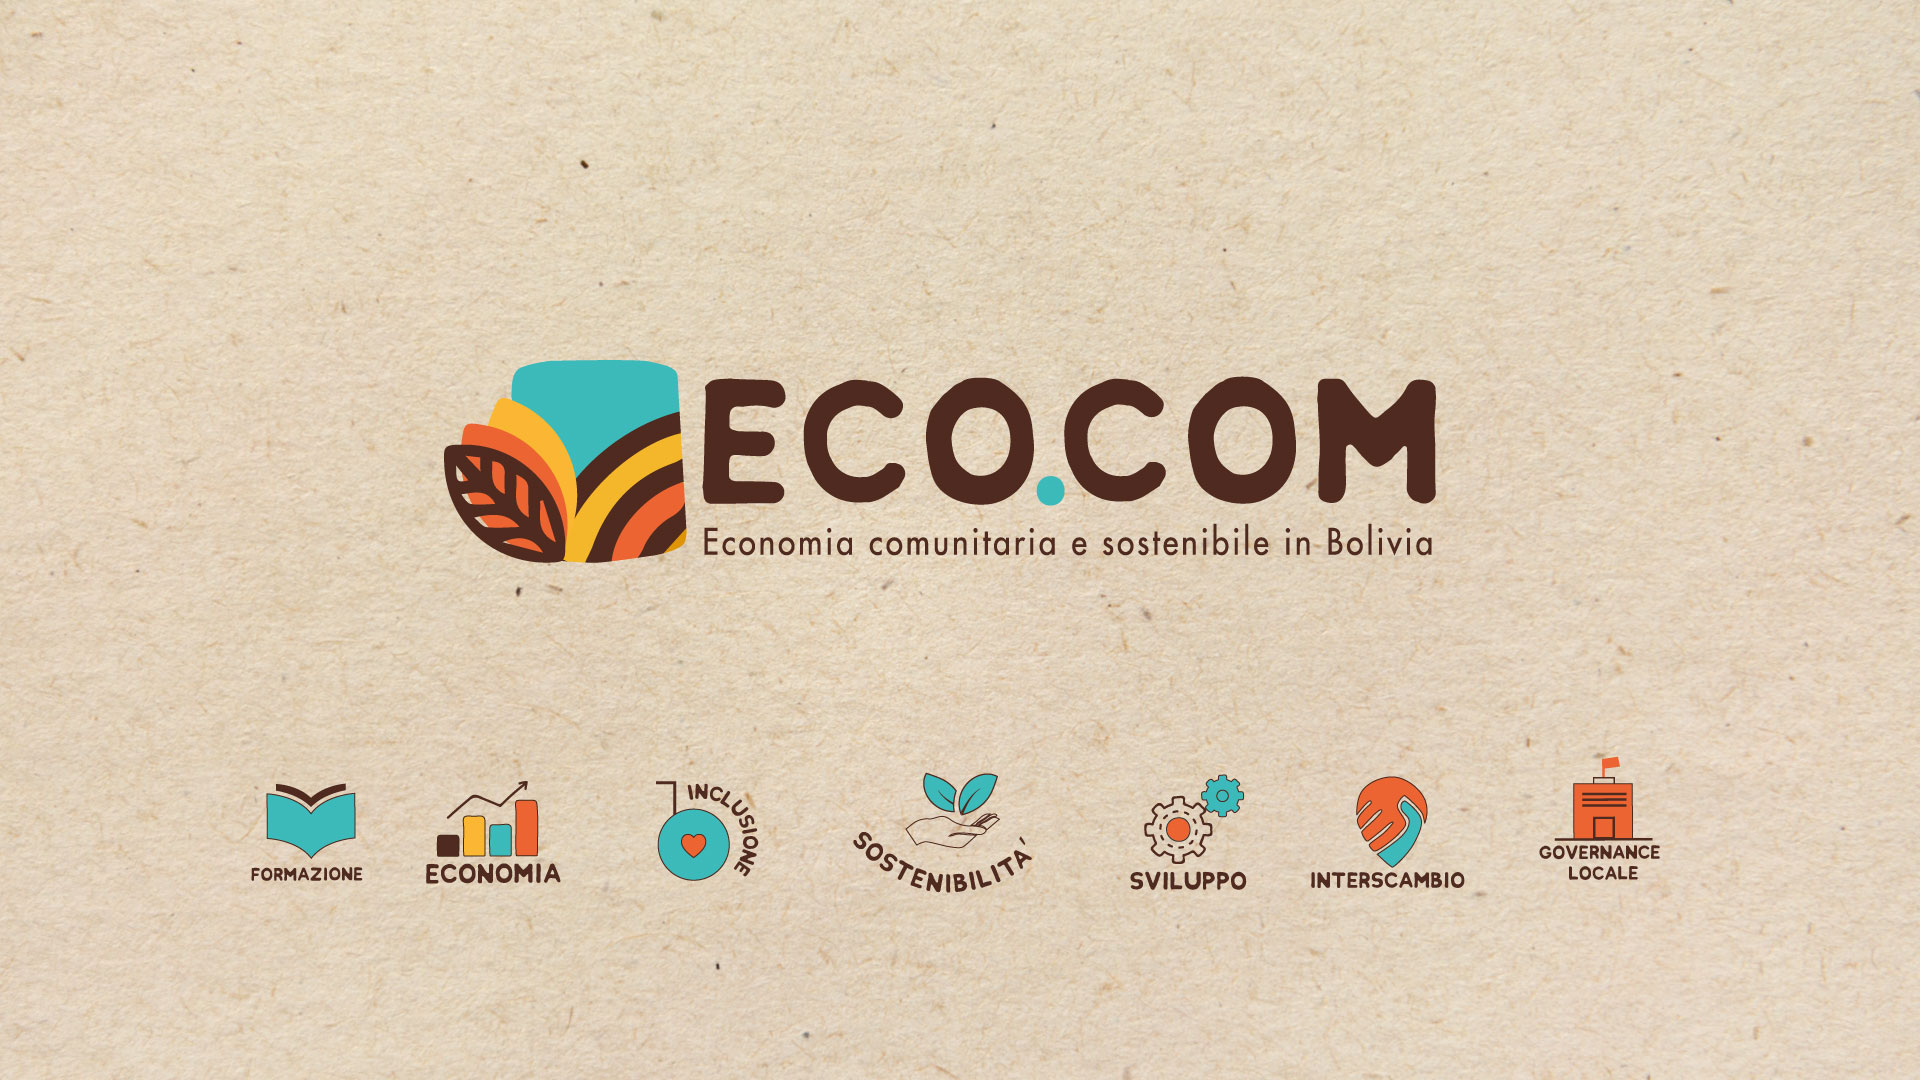 ECO.COM Bolivia